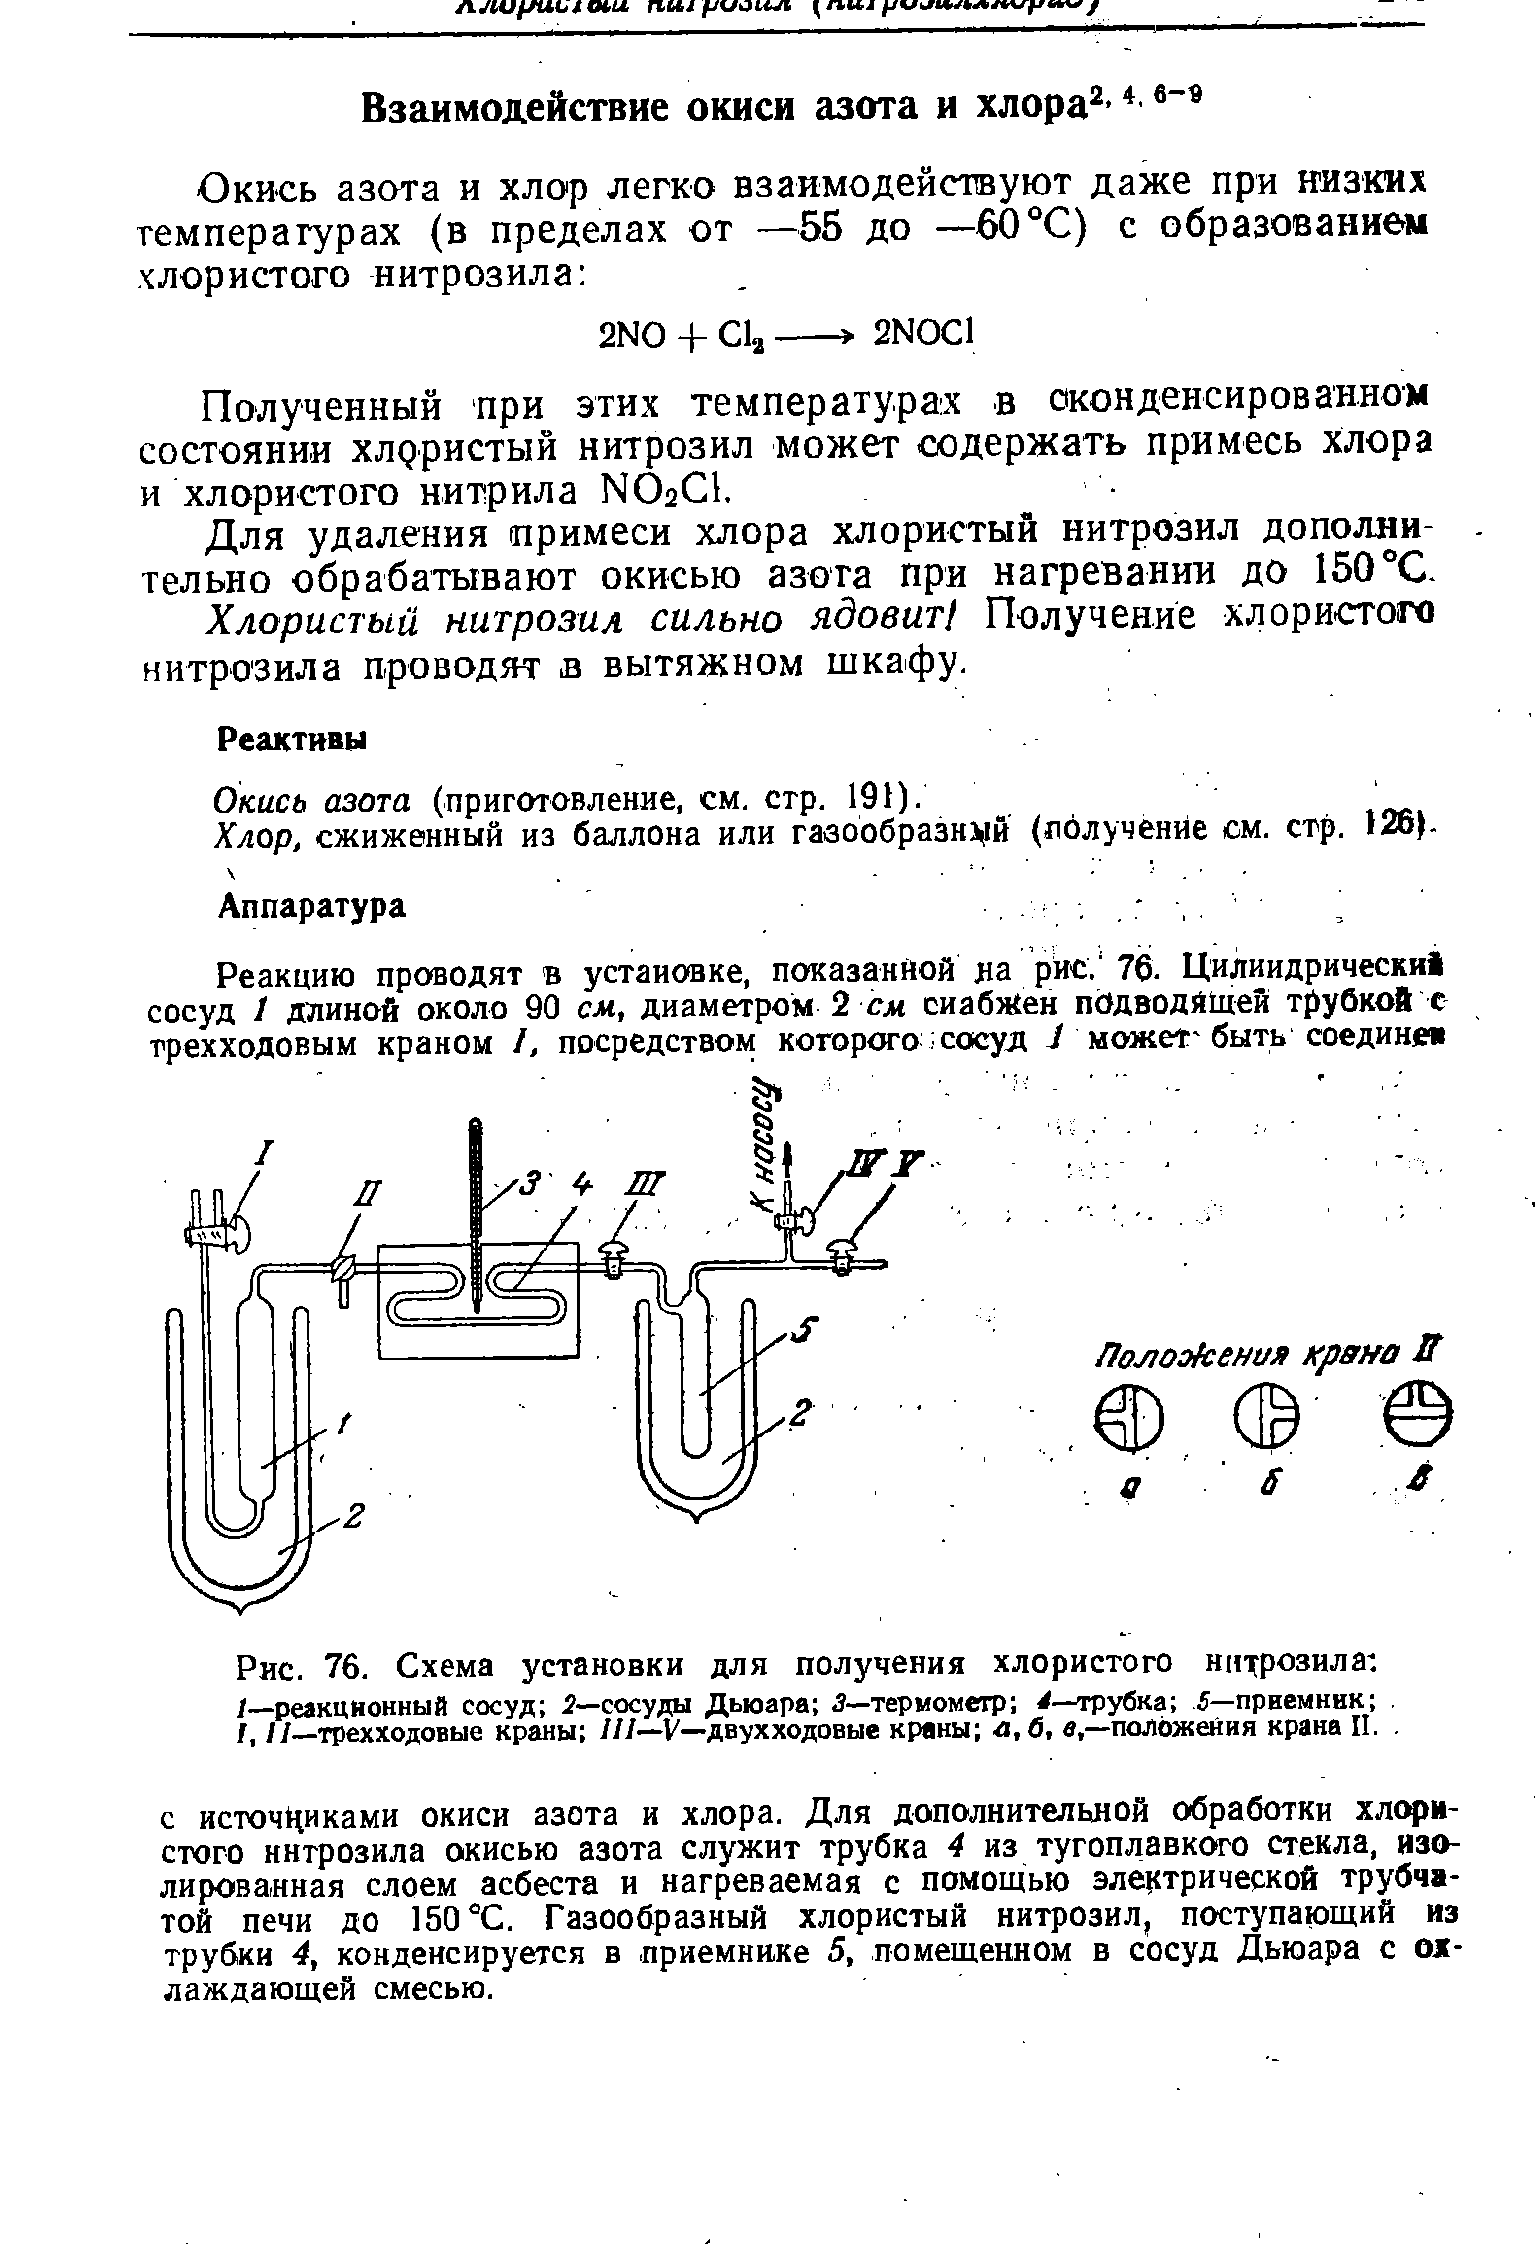 Окись азота (приготовление, см. стр. 191).